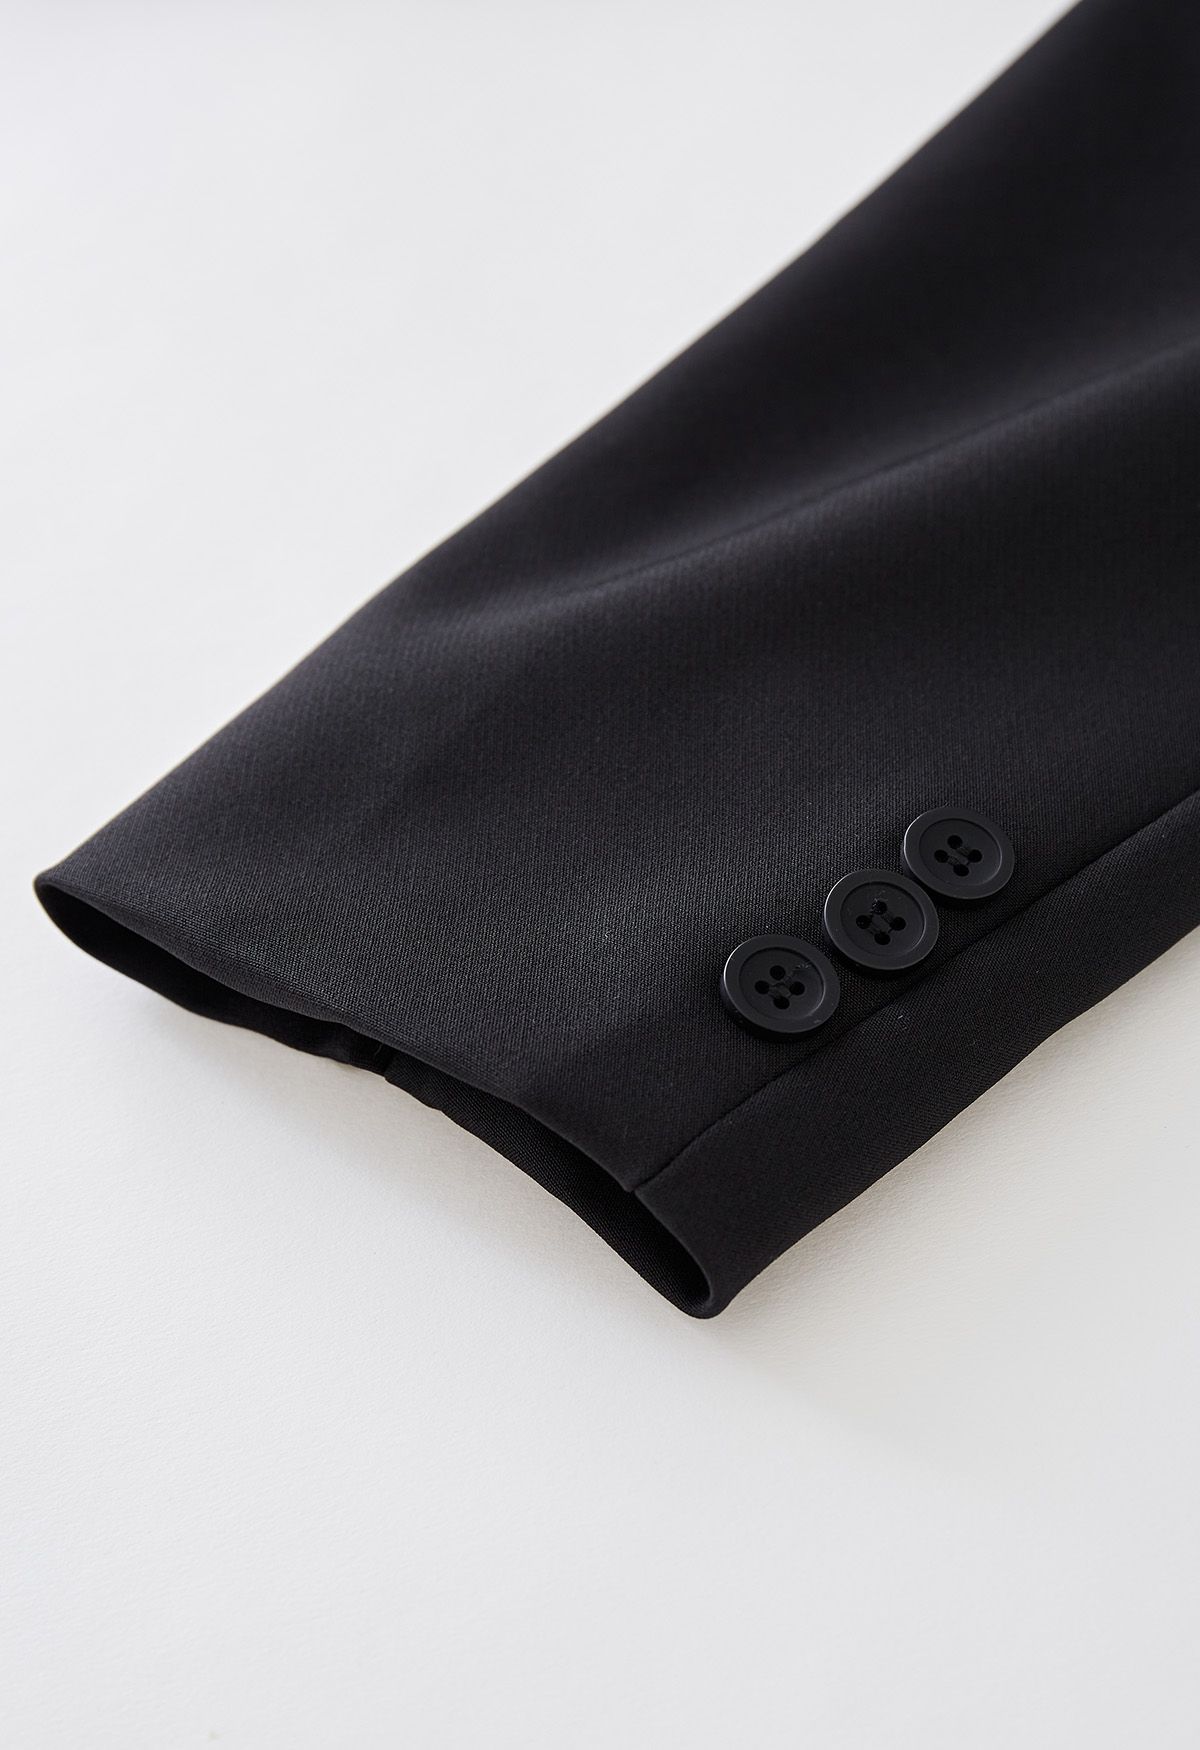 Affascinante blazer corto con revers classico nero